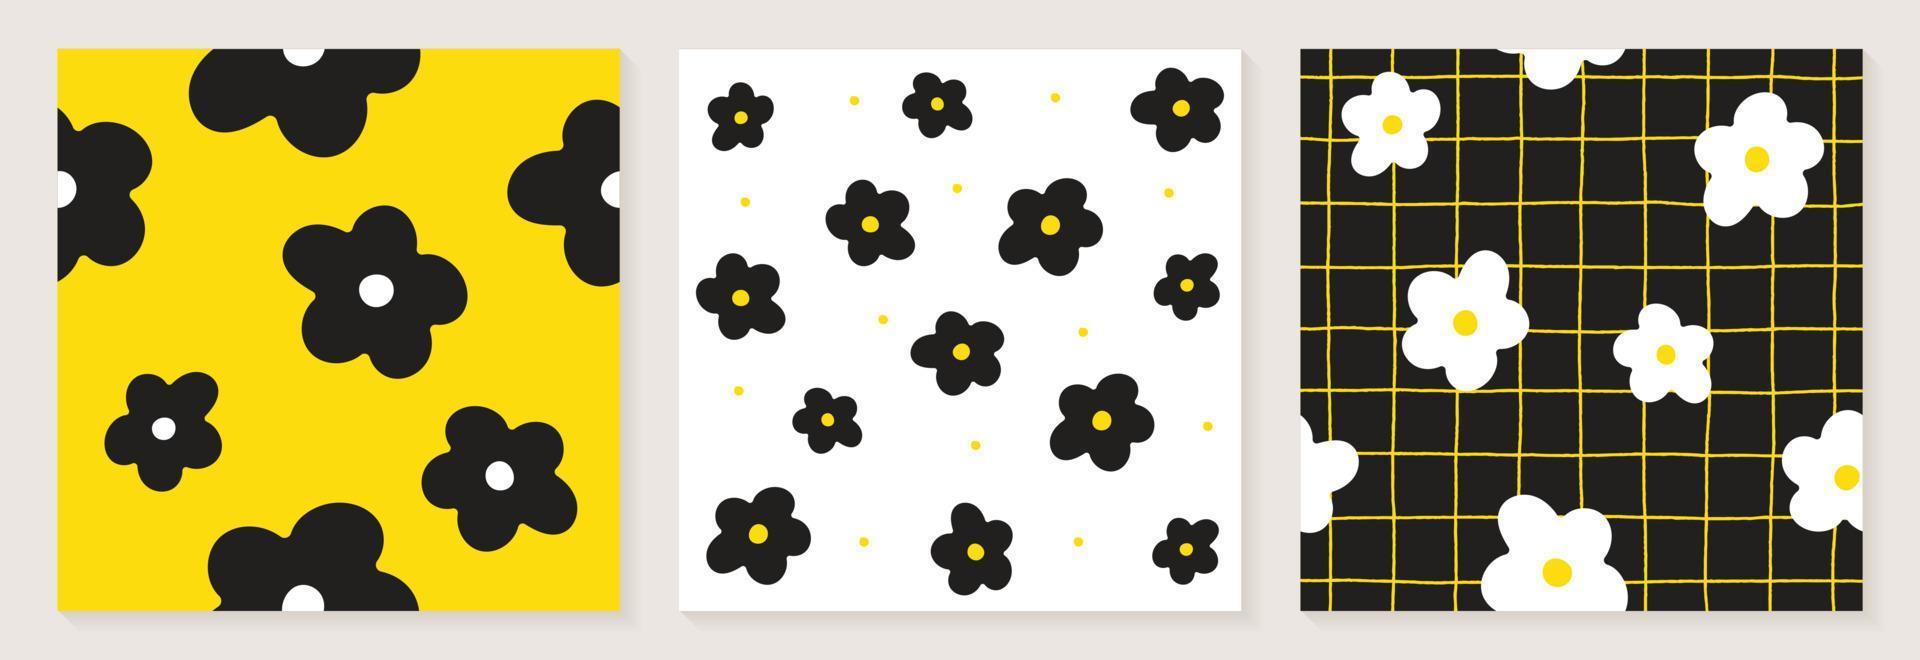 schattig madeliefje bloem wit zwart geel kleur confetti vlakke stijl stof textiel raster lijn controleren naadloze patroon achtergrond botanisch weide zomer lente kaart set collectie bundel vectorillustratie vector